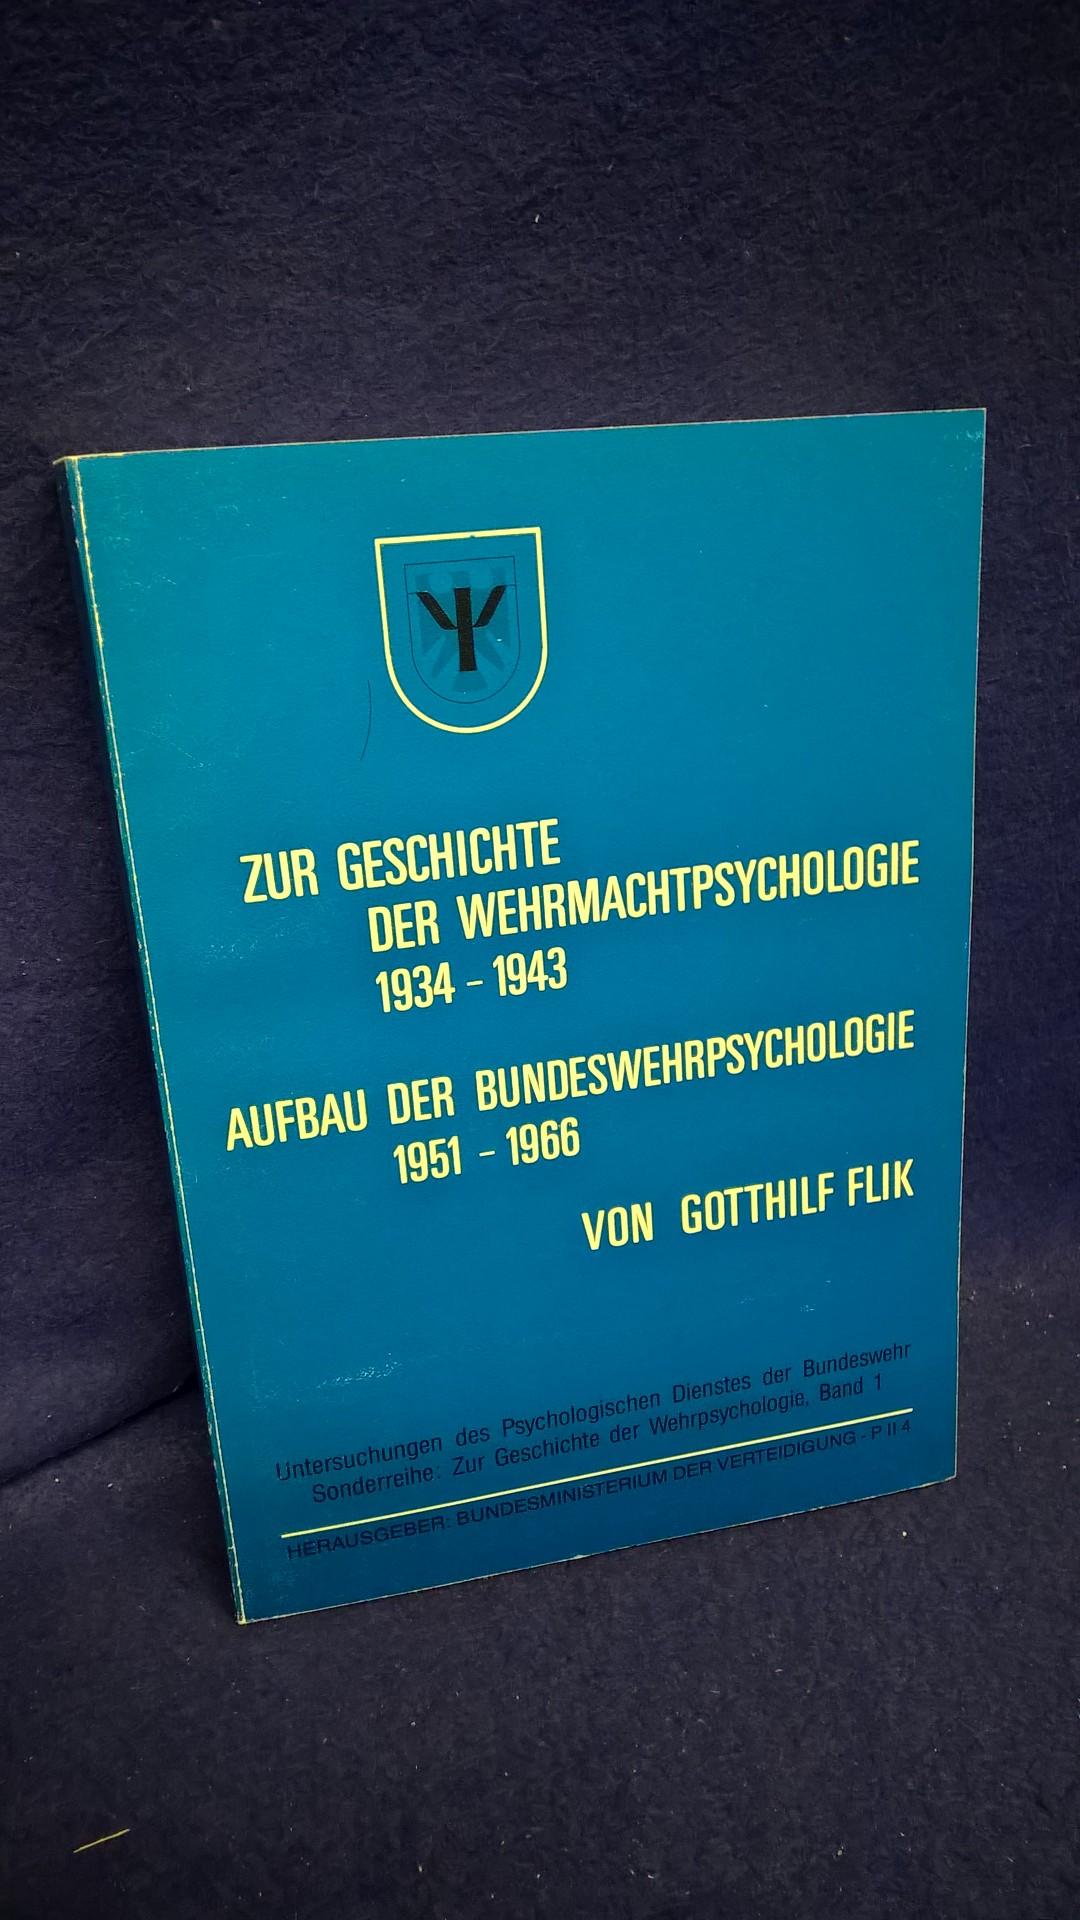 Zur Geschichte der Wehrmachtpsychologie 1934 - 1943. Aufbau der Bundeswehrpsychologie 1951 - 1966 (1988).